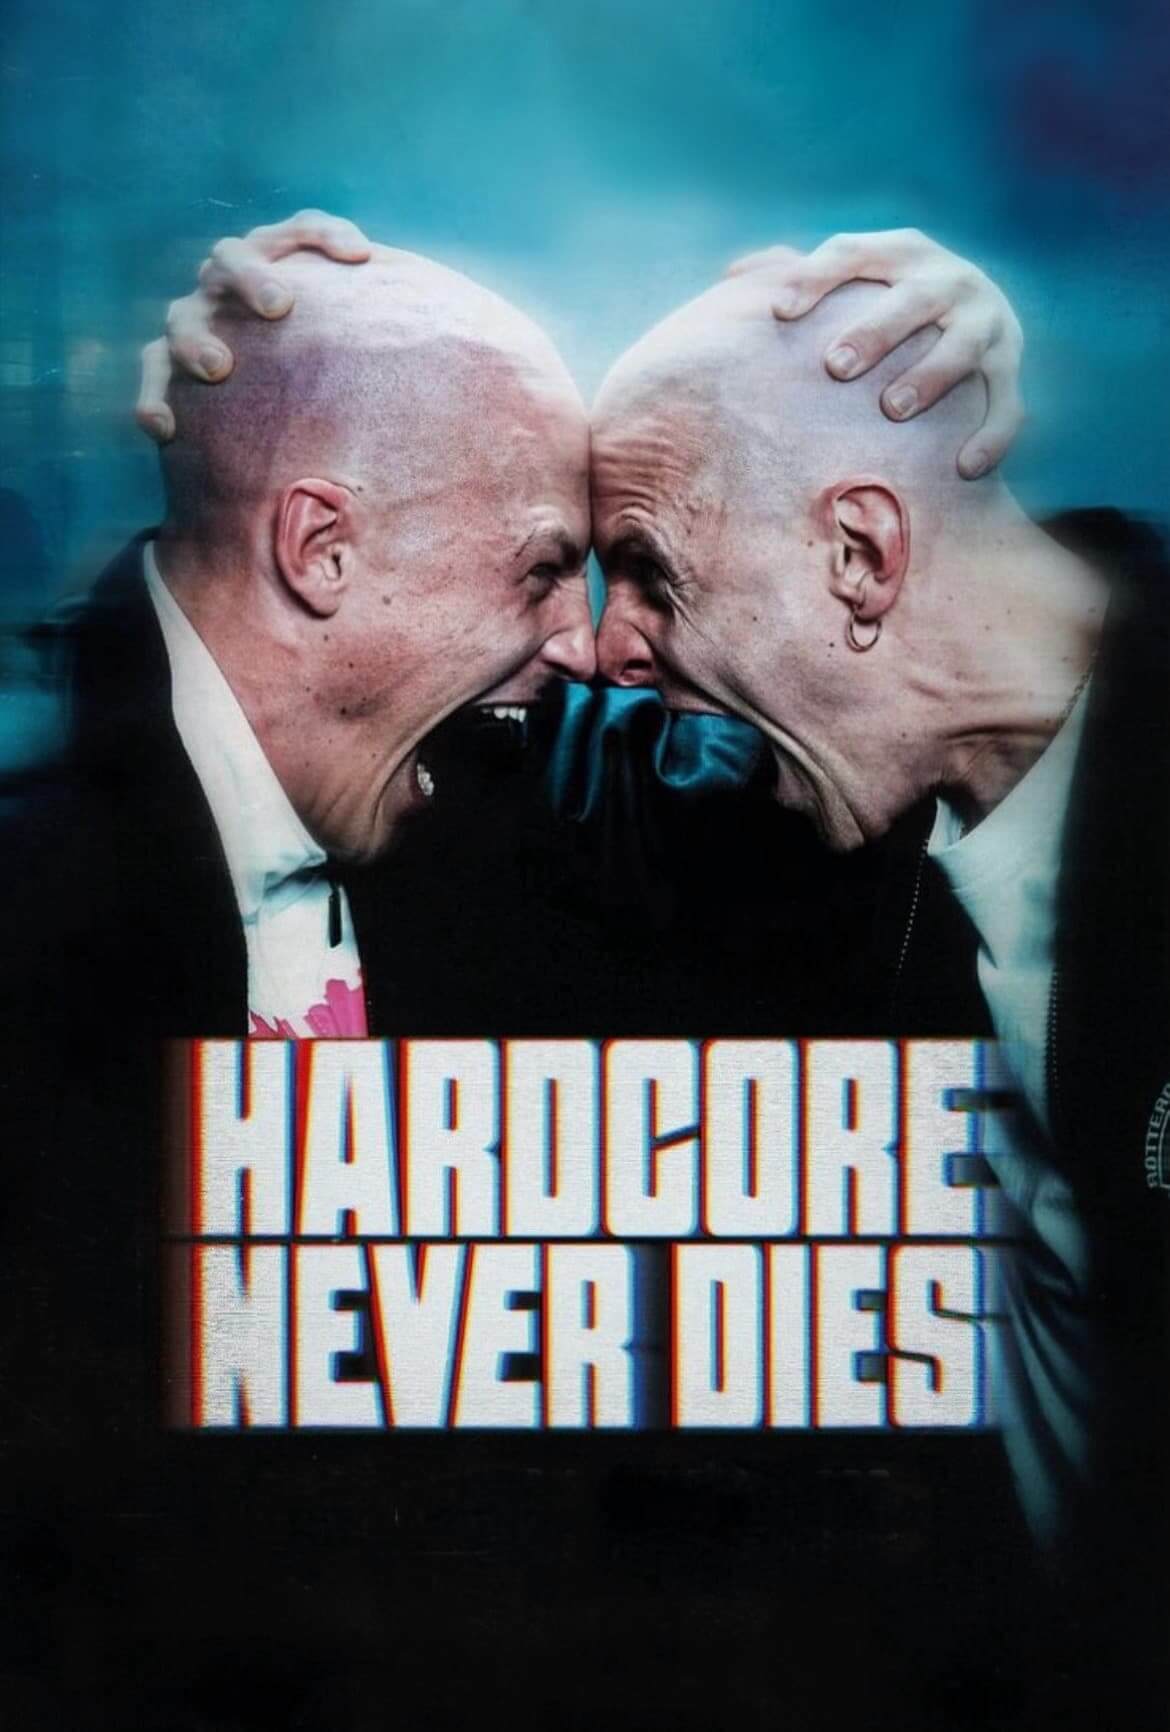 هاردکور هرگز نمی میرد (Hardcore Never Dies)